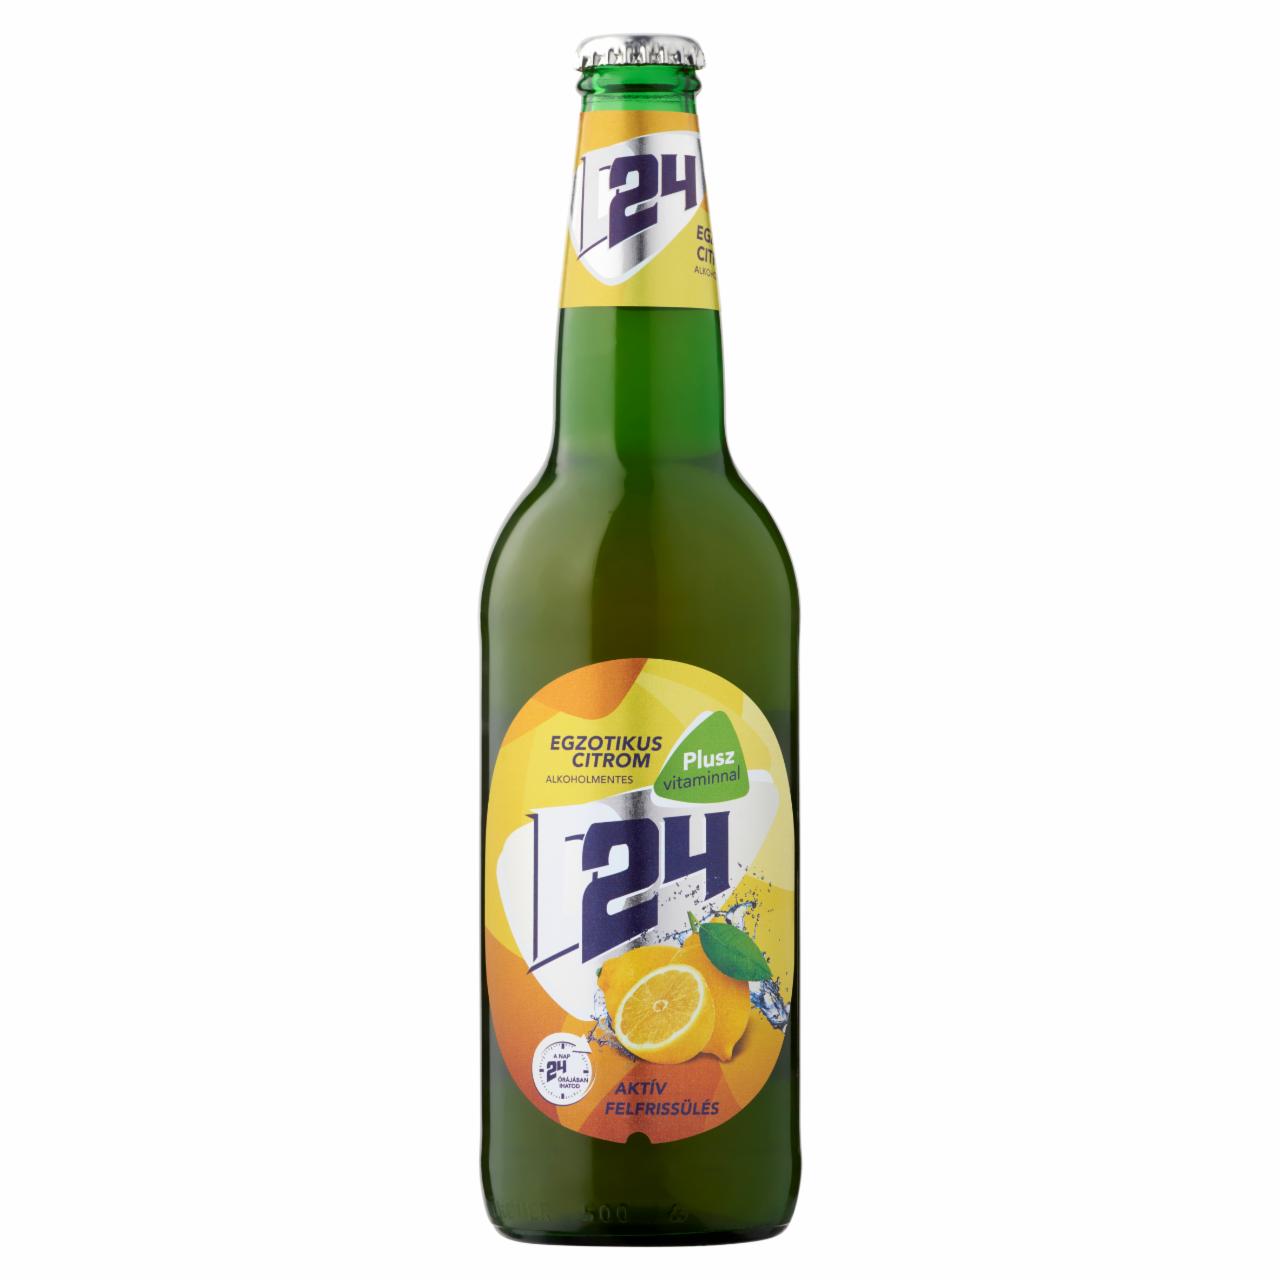 Képek - D24 Egzotikus Citrom citrom ital és alkoholmentes világos sör keveréke 0,5 l